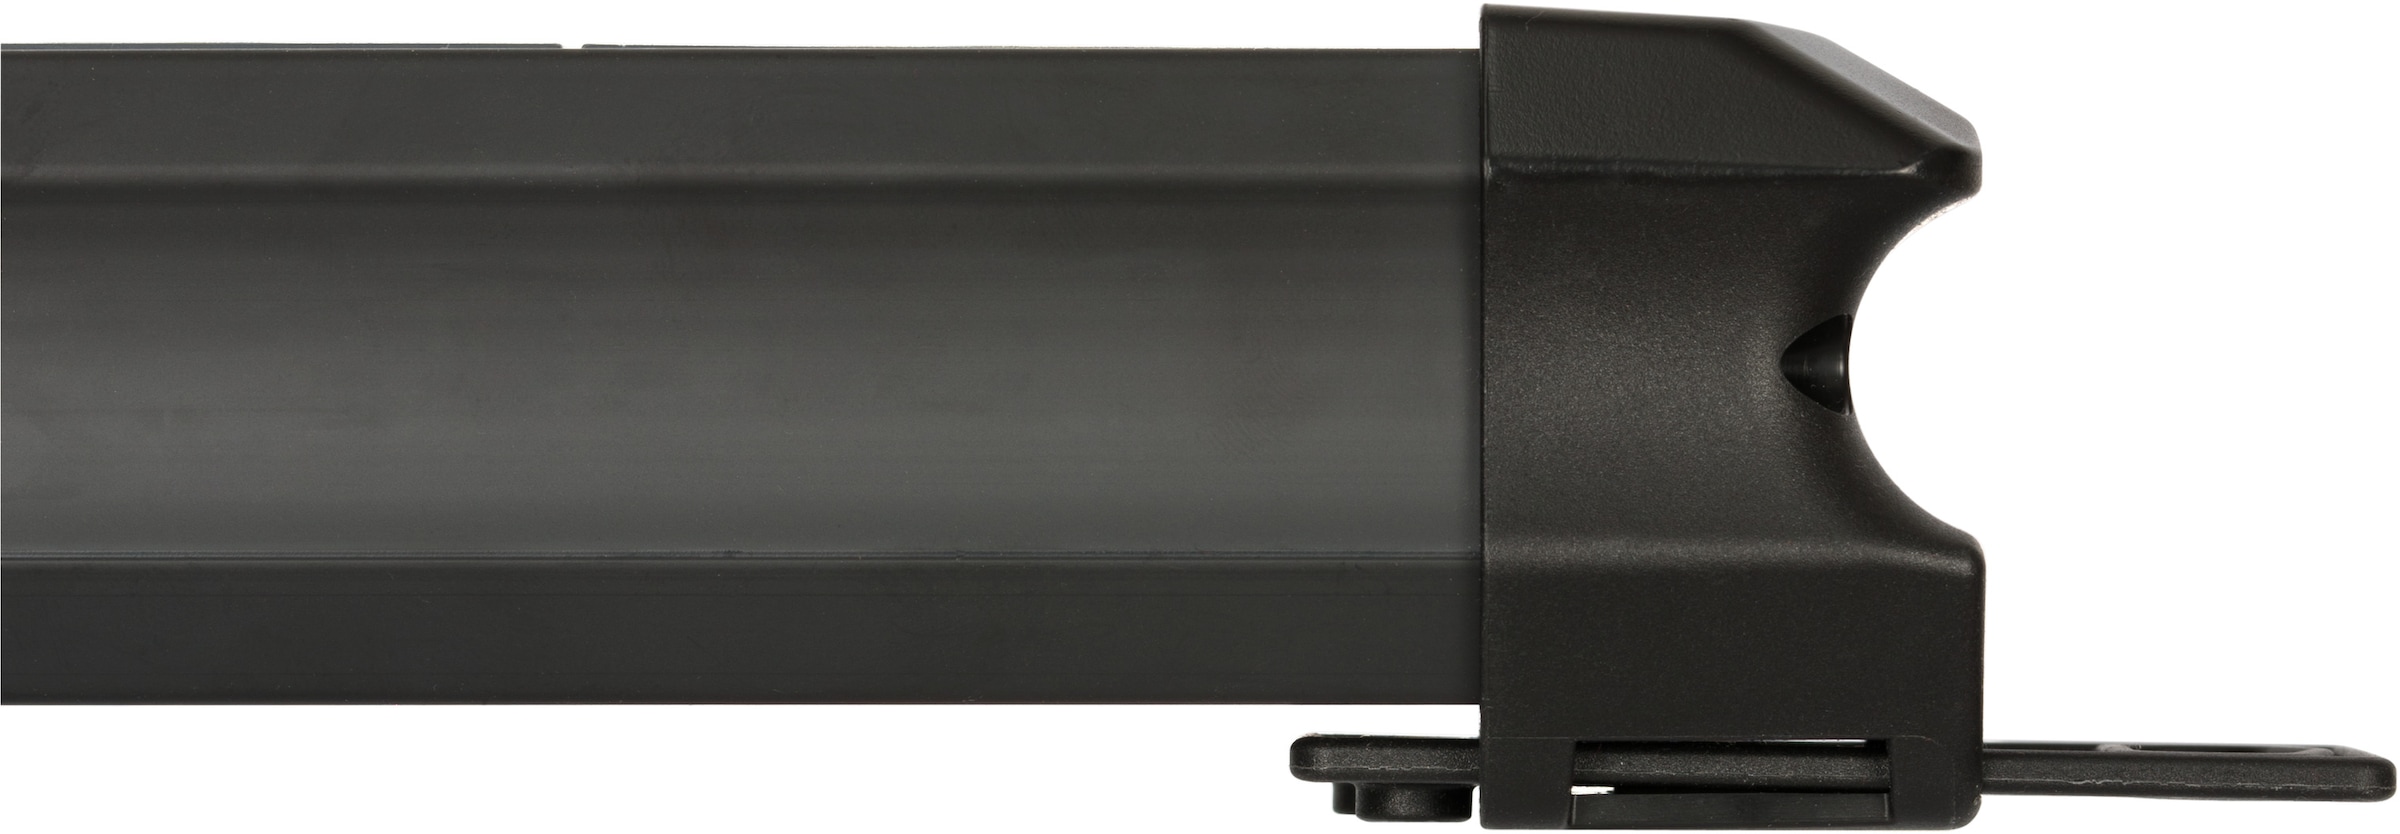 Brennenstuhl Steckdosenleiste »Premium-Line Comfort Switch Plus«, 6-fach, (Kabellänge 3 m), 2x permanent, 4x schaltbar, mit Hand-Fußschalter